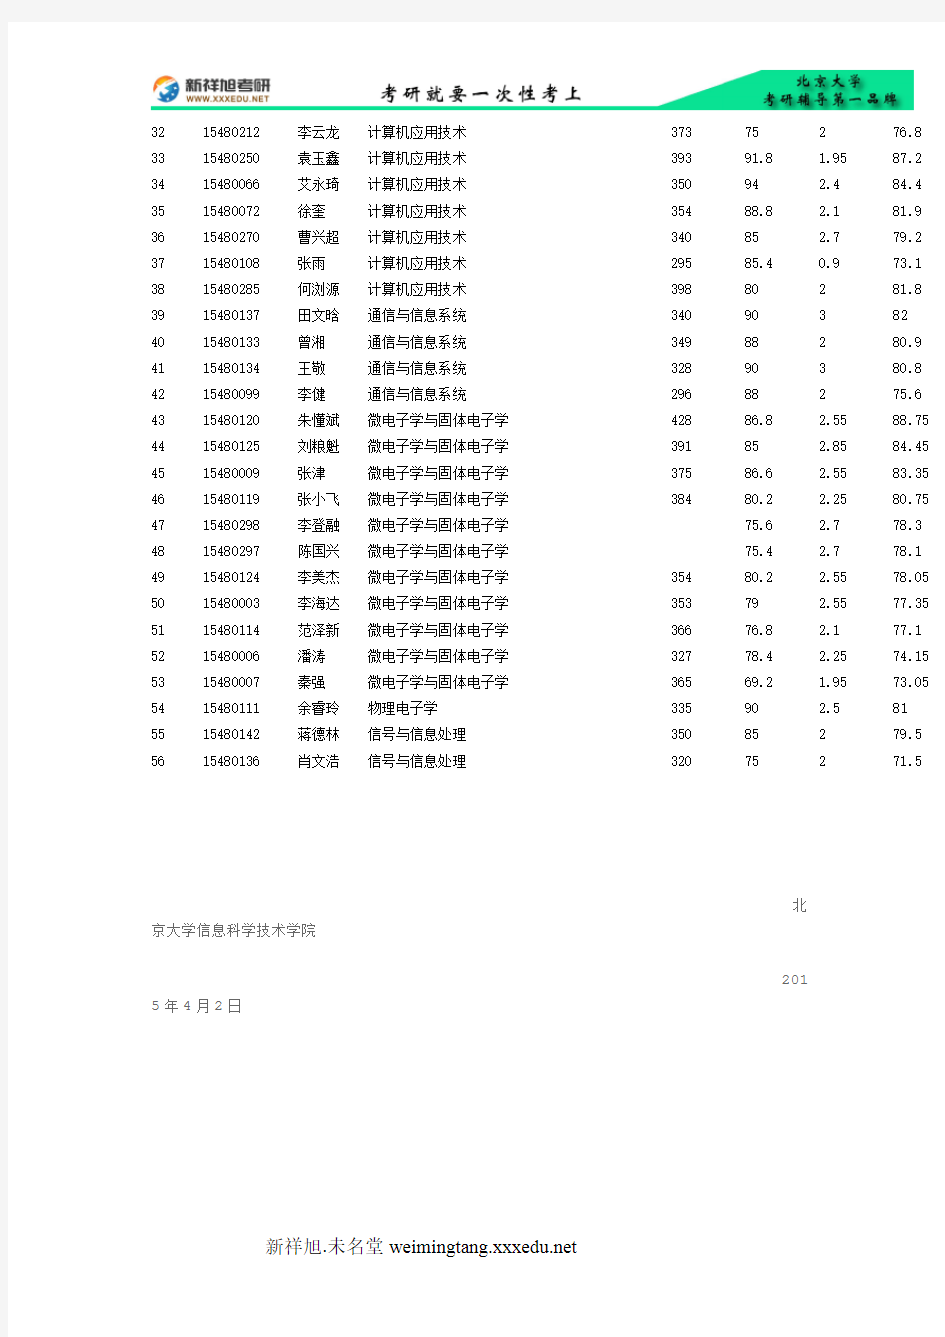 2015年北京大学信息科学技术学院考研录取名单公示-新祥旭考研辅导